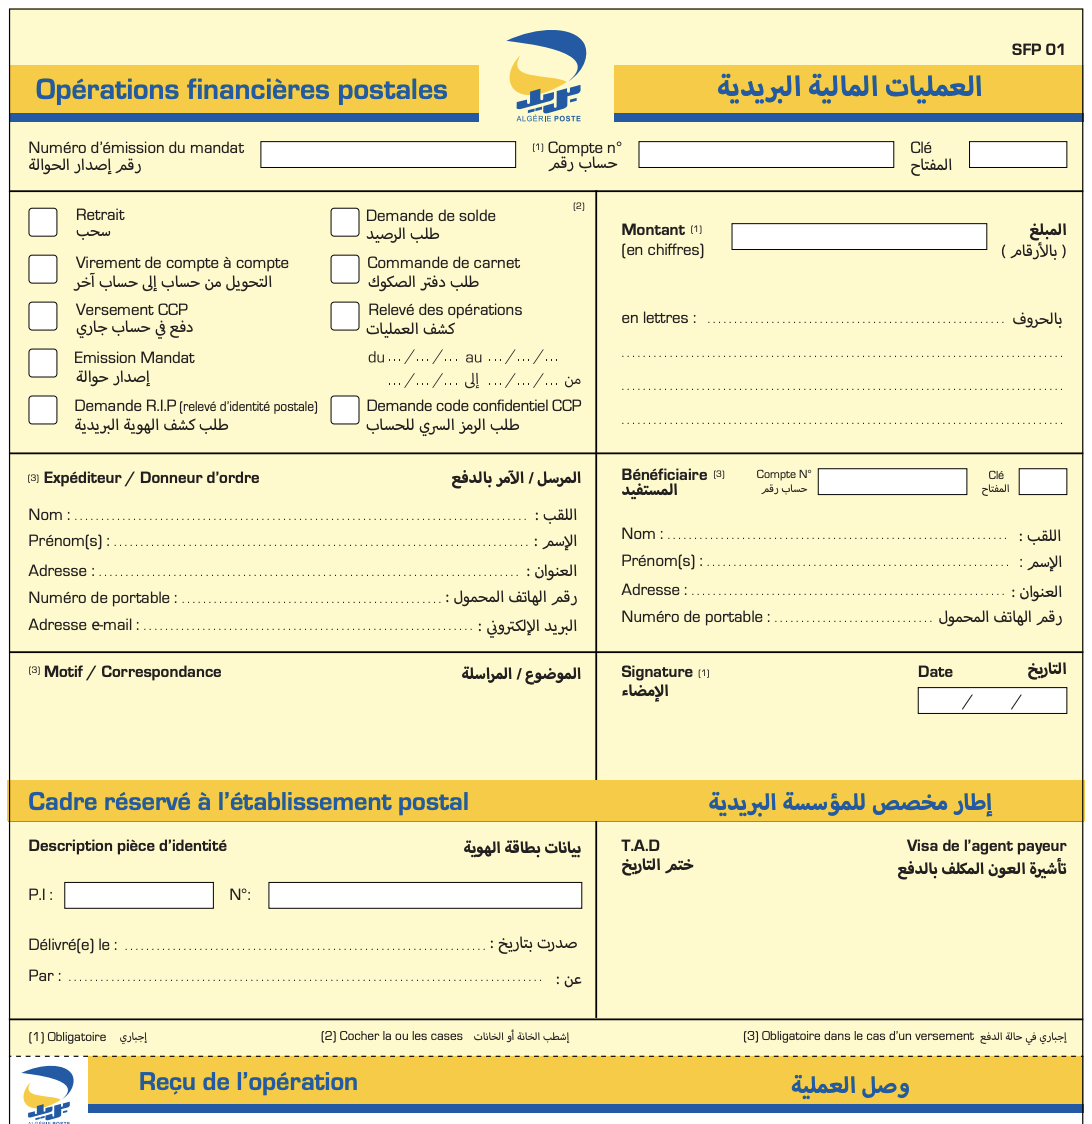 Algeria Postal Form SFP-01